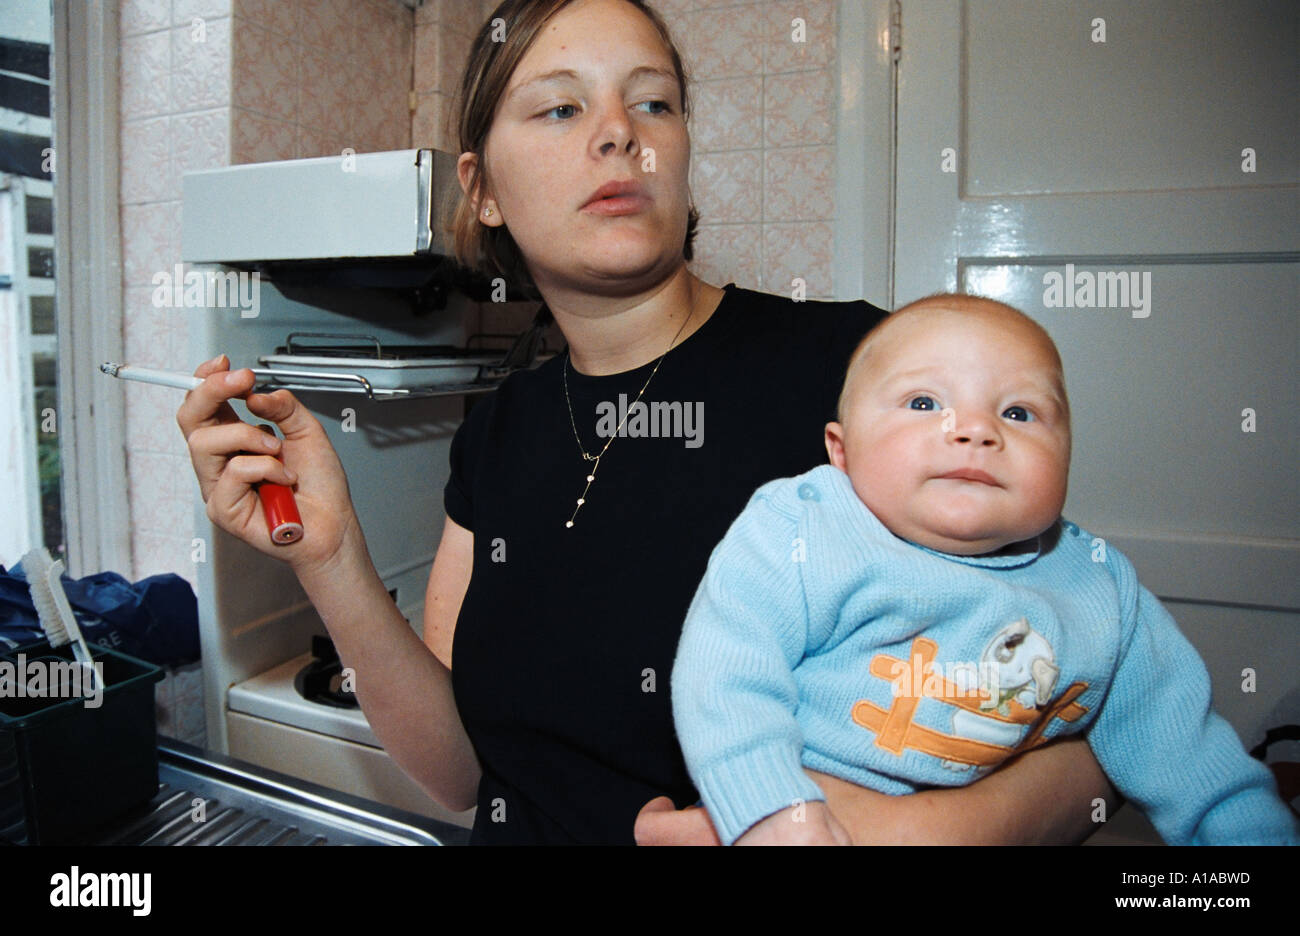 Woman smoking near baby Stock Photo